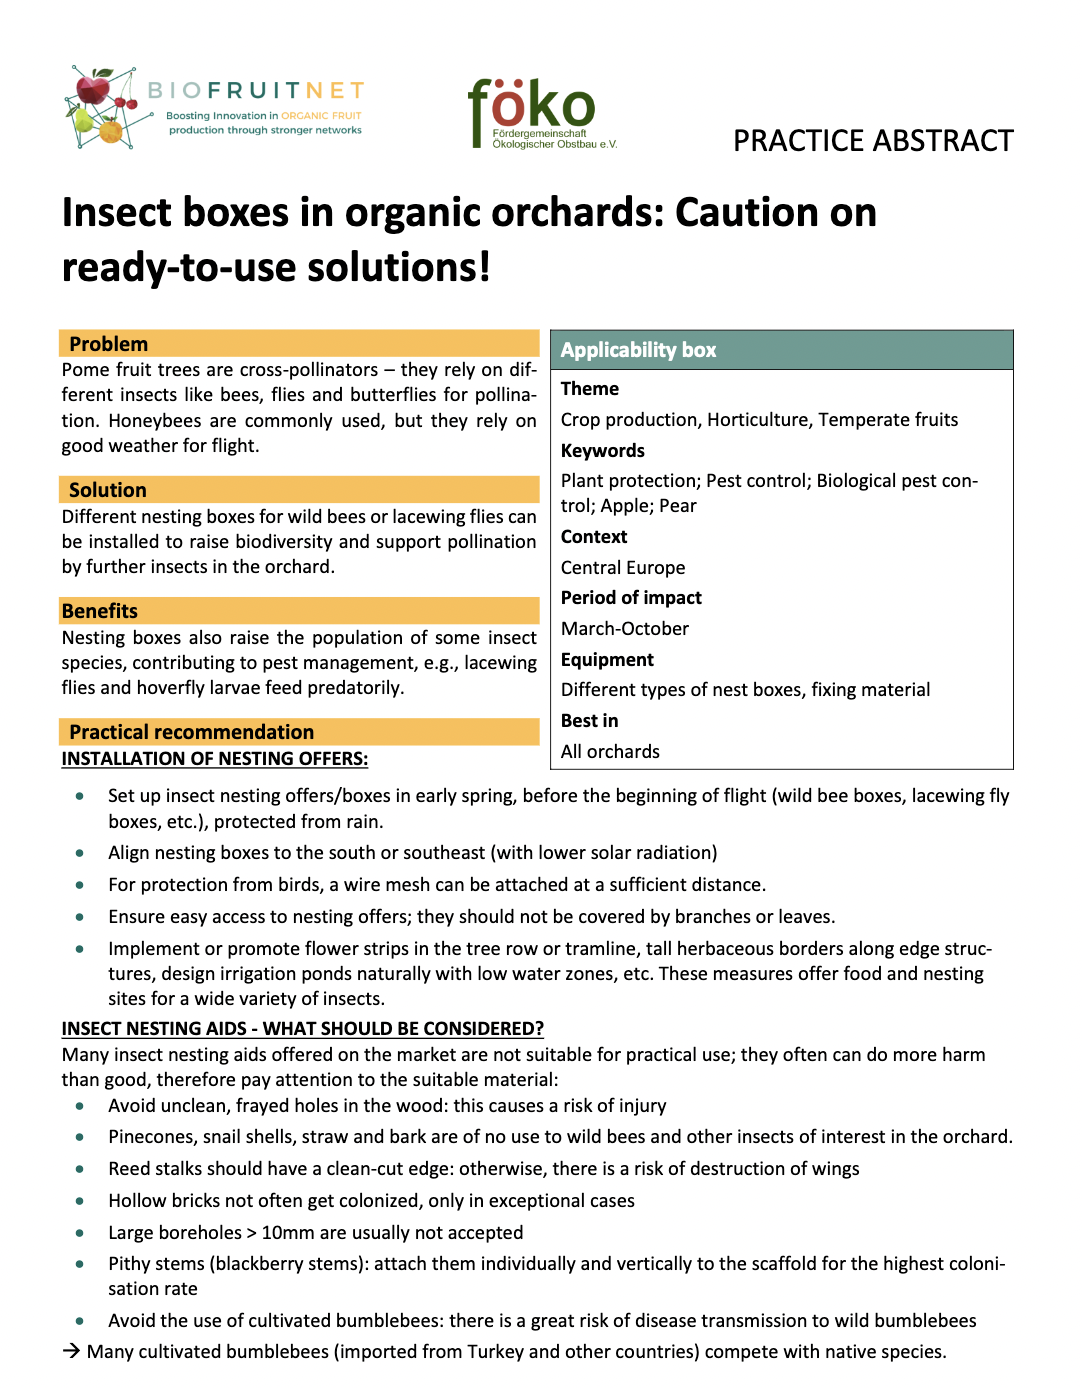 Insectenboxen in biologische boomgaarden: Let op met kant-en-klare oplossingen! (BIOFRUITNET Praktijksamenvatting)